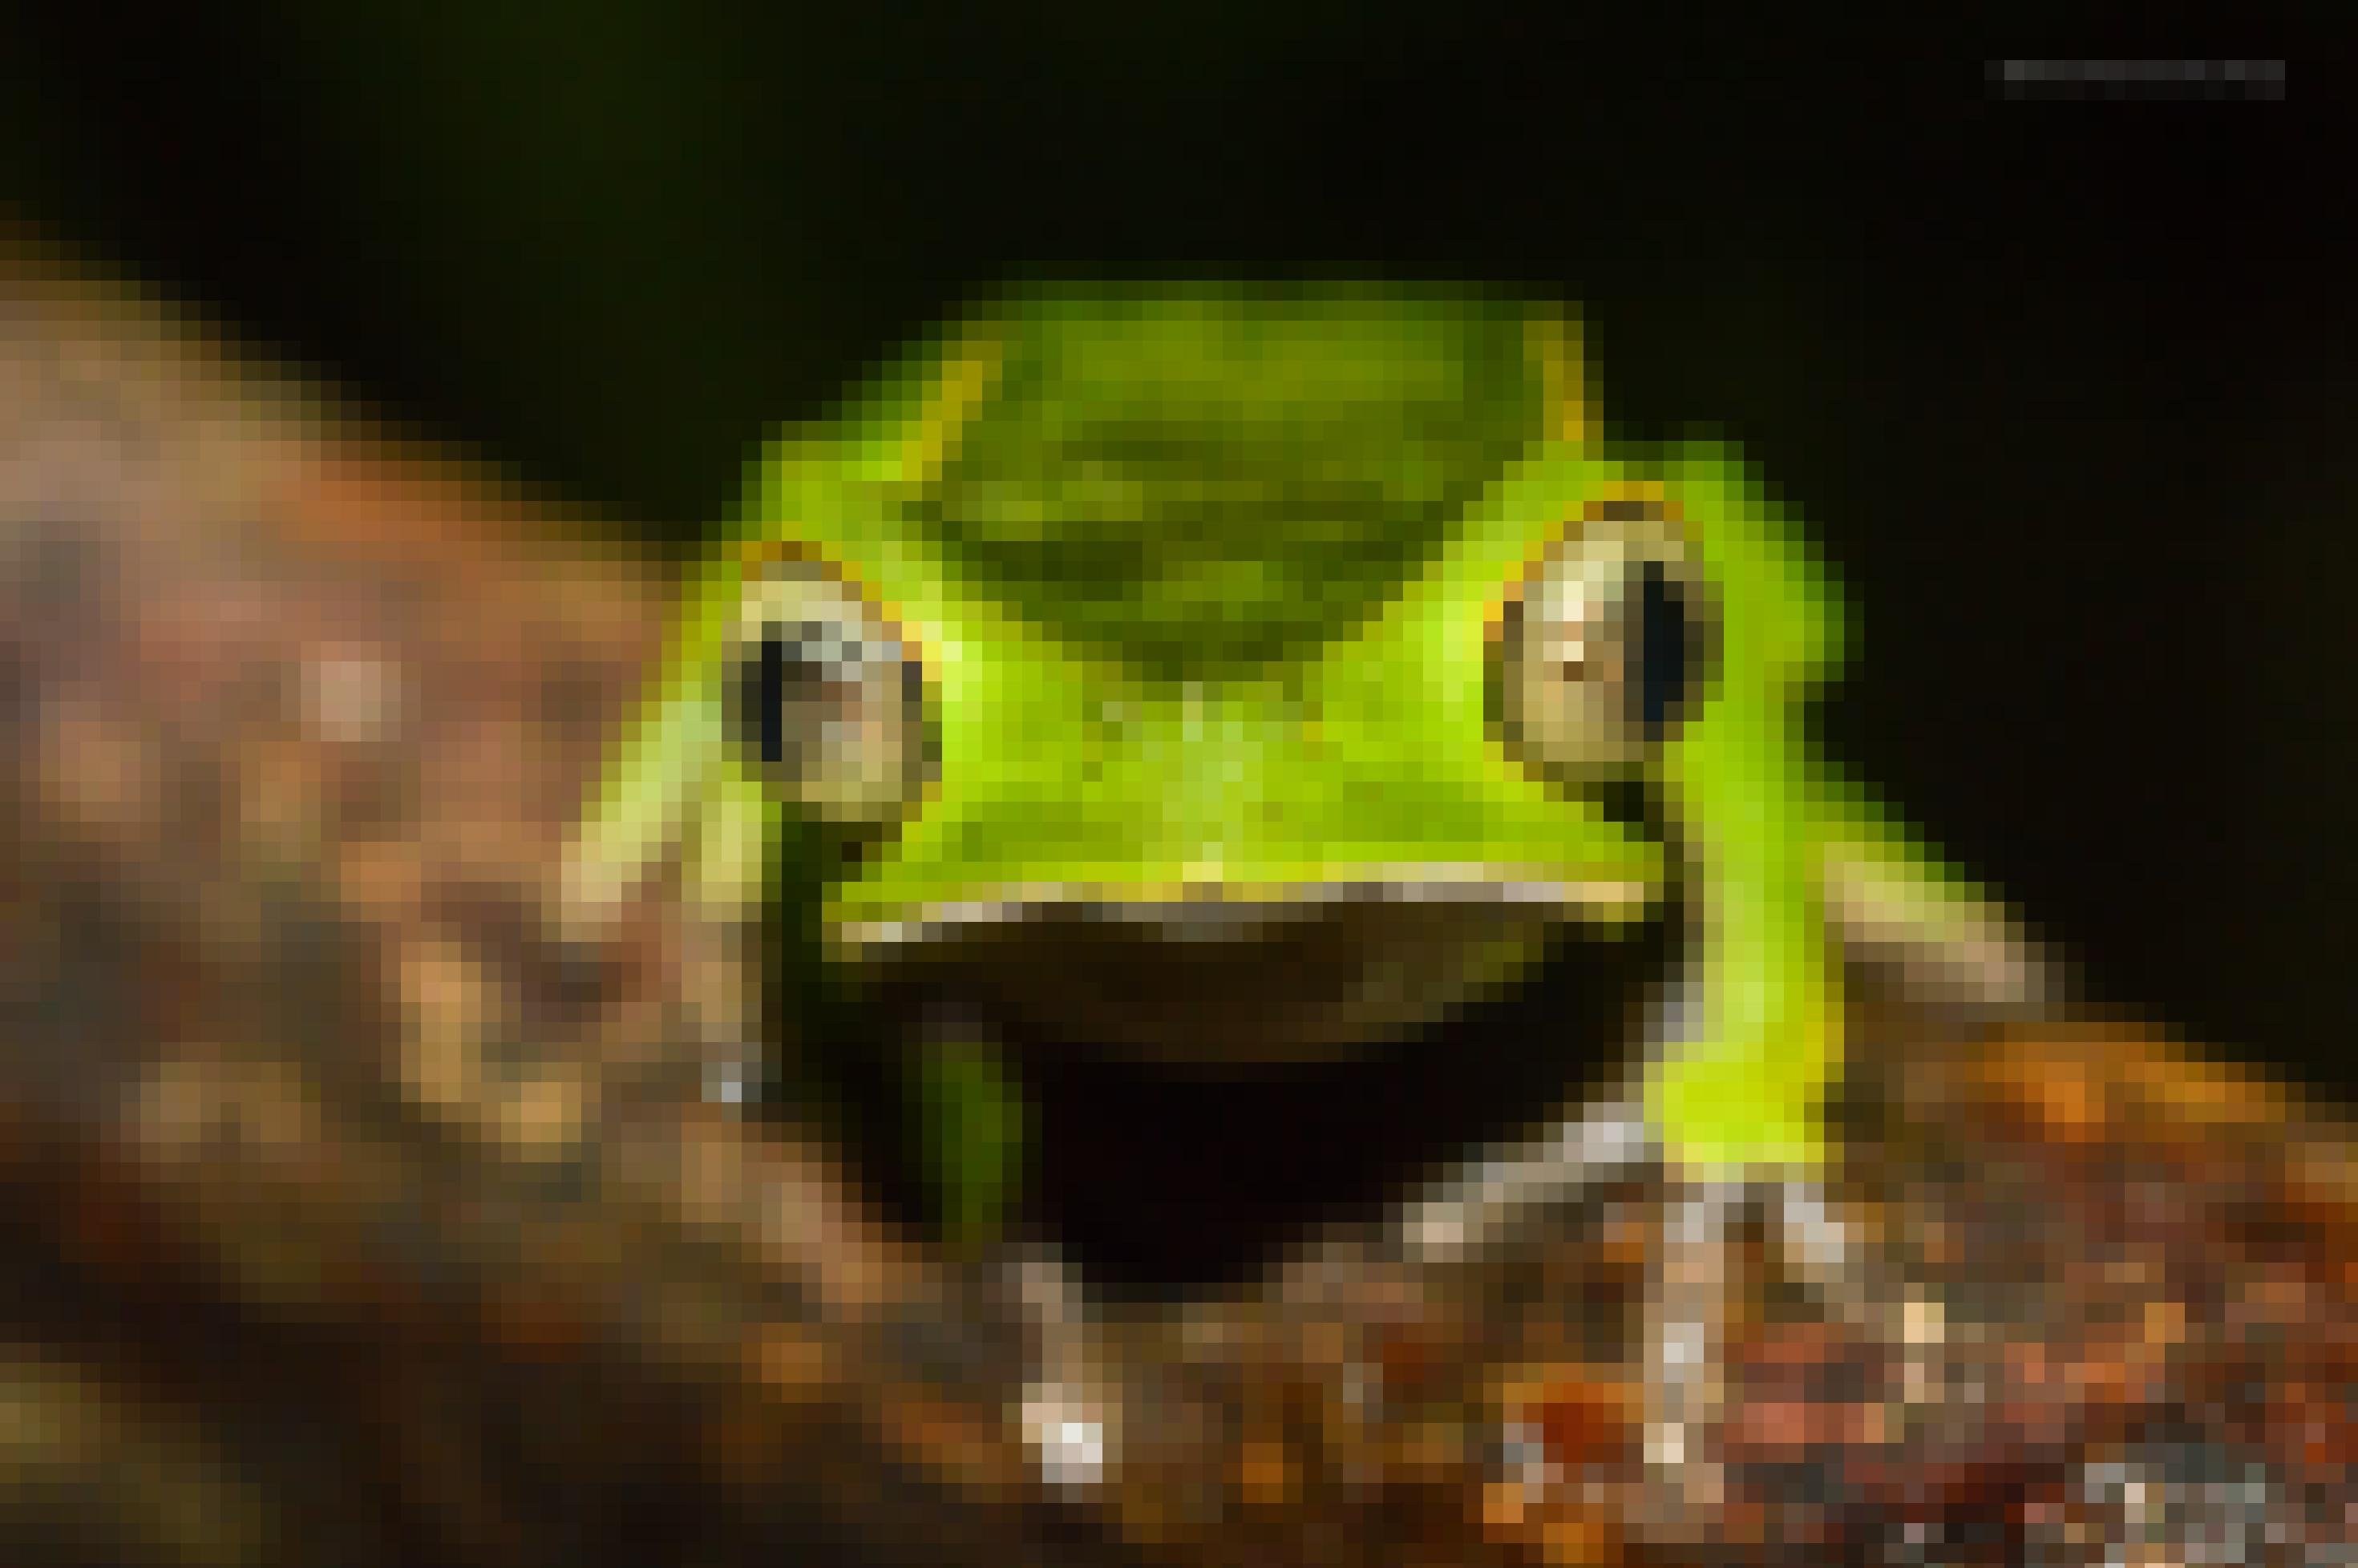 Ein grüner Frosch sitzt auf einem Ast und blickt in die Kamera.